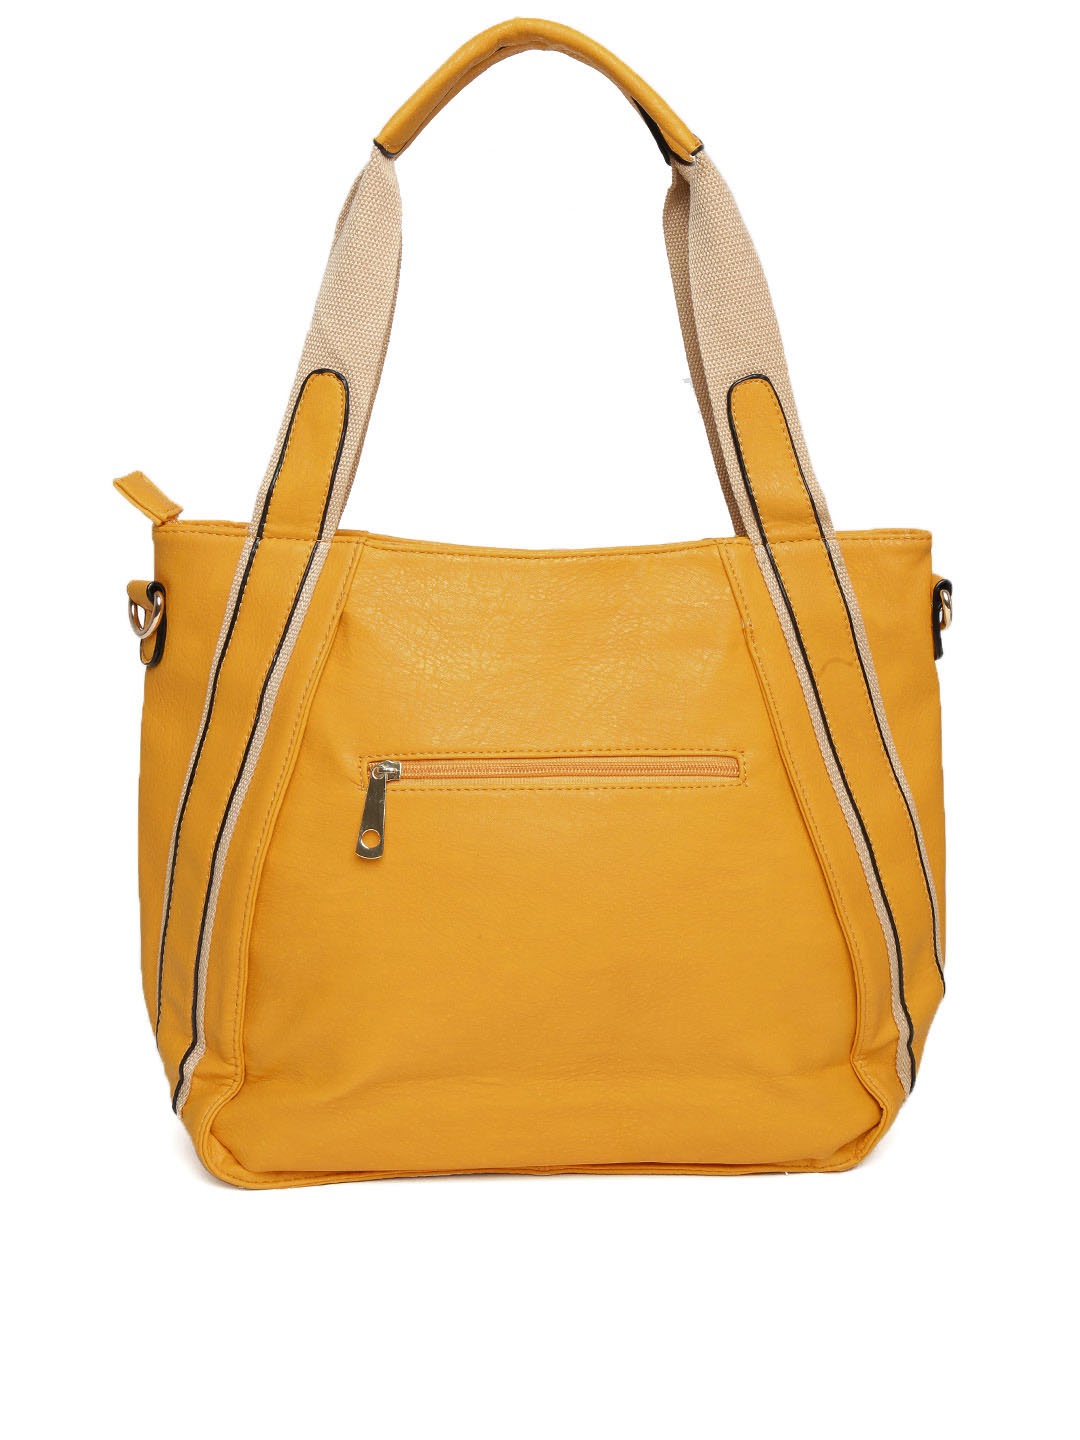 Myntra KIARA Mustard Yellow Shoulder Bag with Metallic Detail 858235 ...